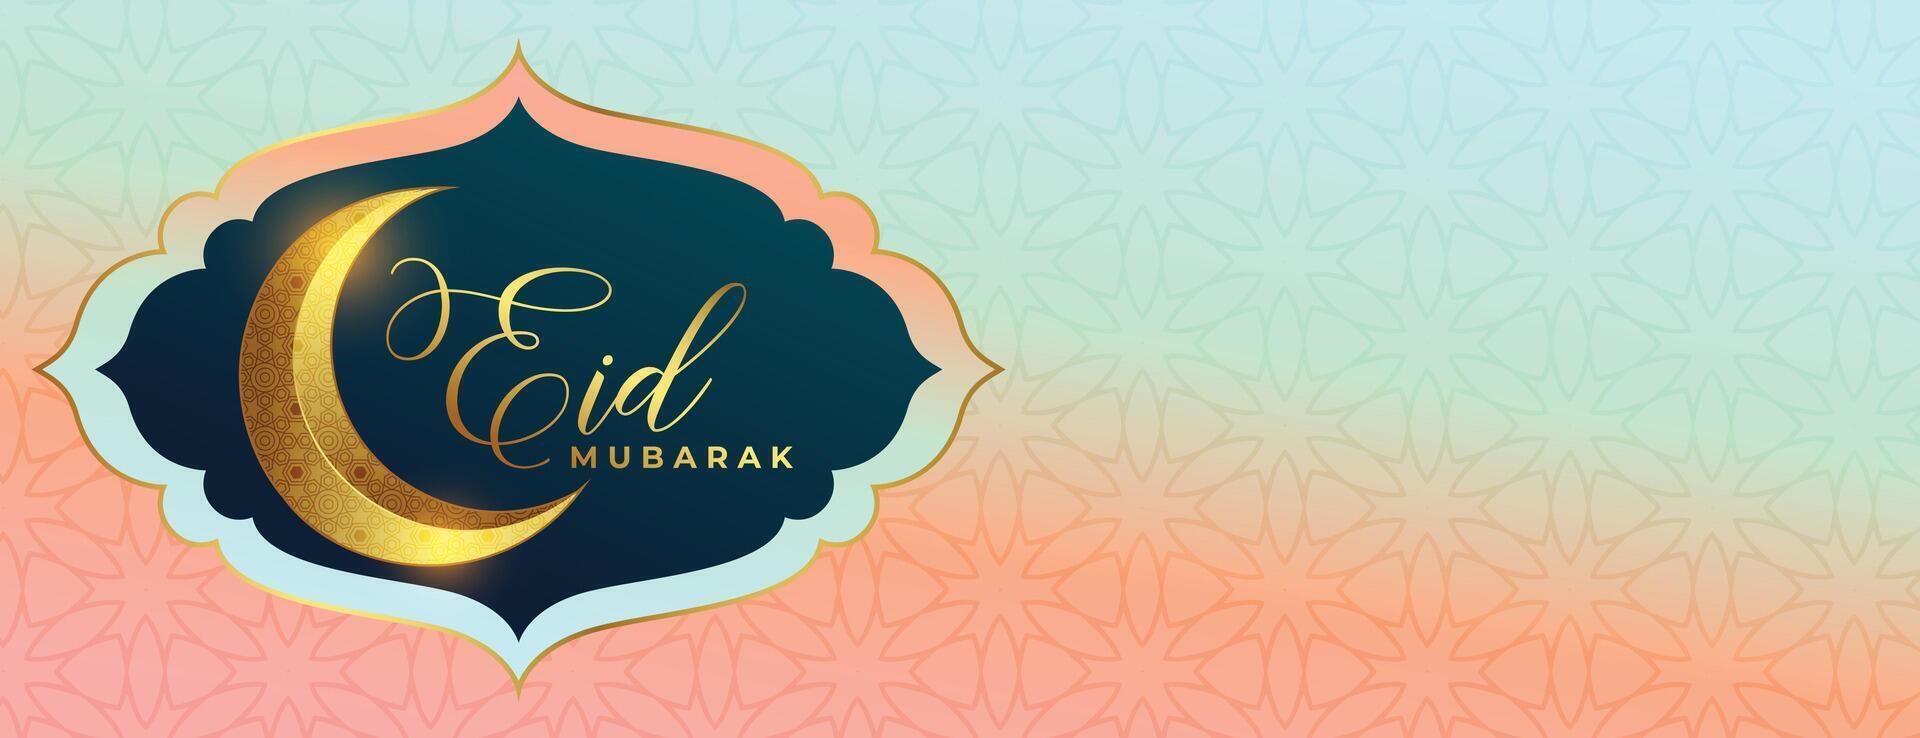 3d estilo dorado creciente eid Mubarak deseos póster para tu celebracion vector